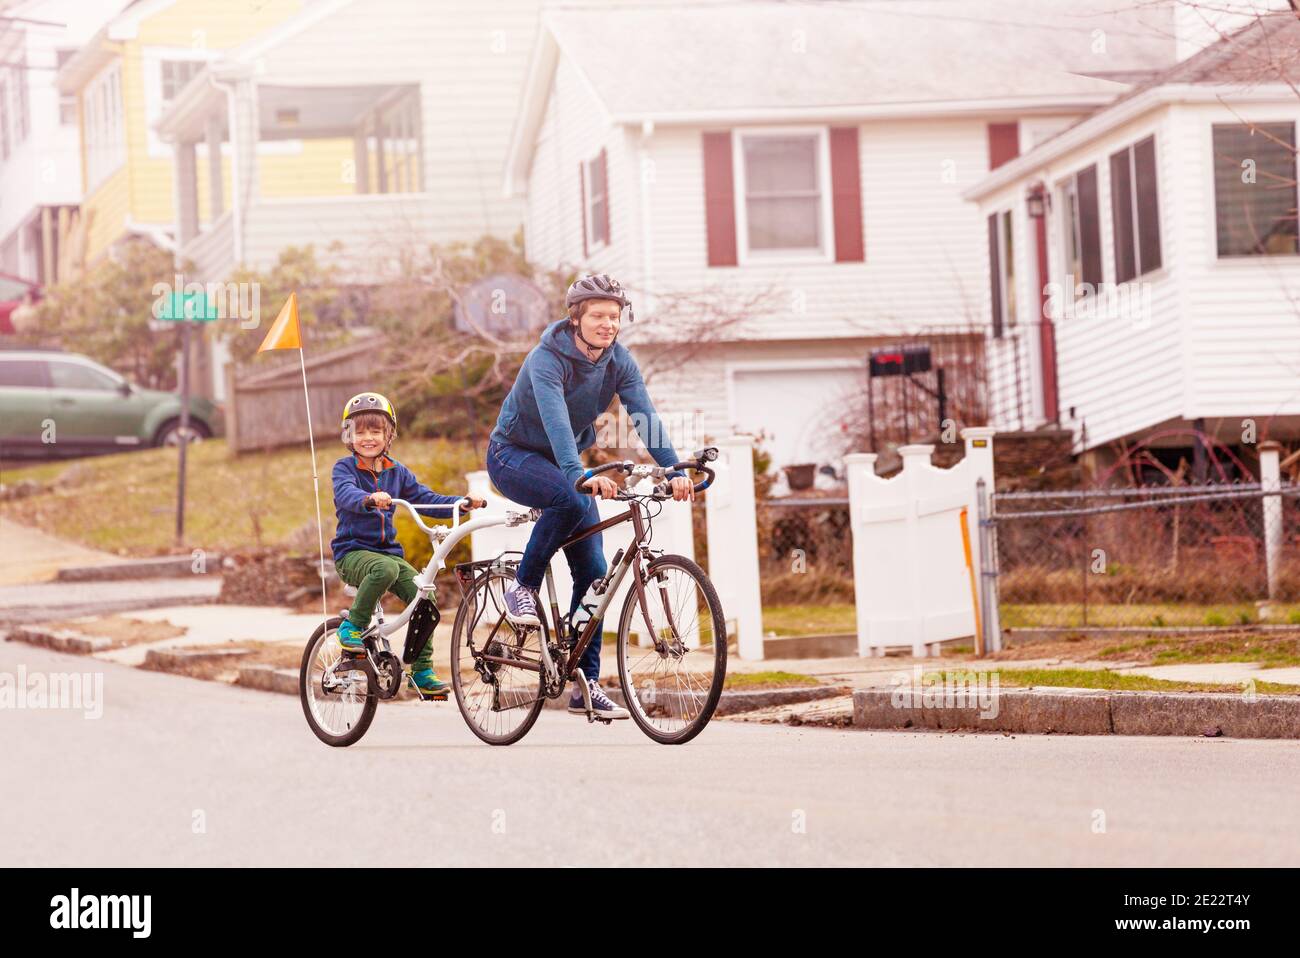 Familie Fahrrad Porträt mit kleinen glücklich Junge Fahrt auf einem Schlepptandemfahrrad, das an den Vater auf der städtischen Straßenseite angeschlossen ist Anzeigen Stockfoto